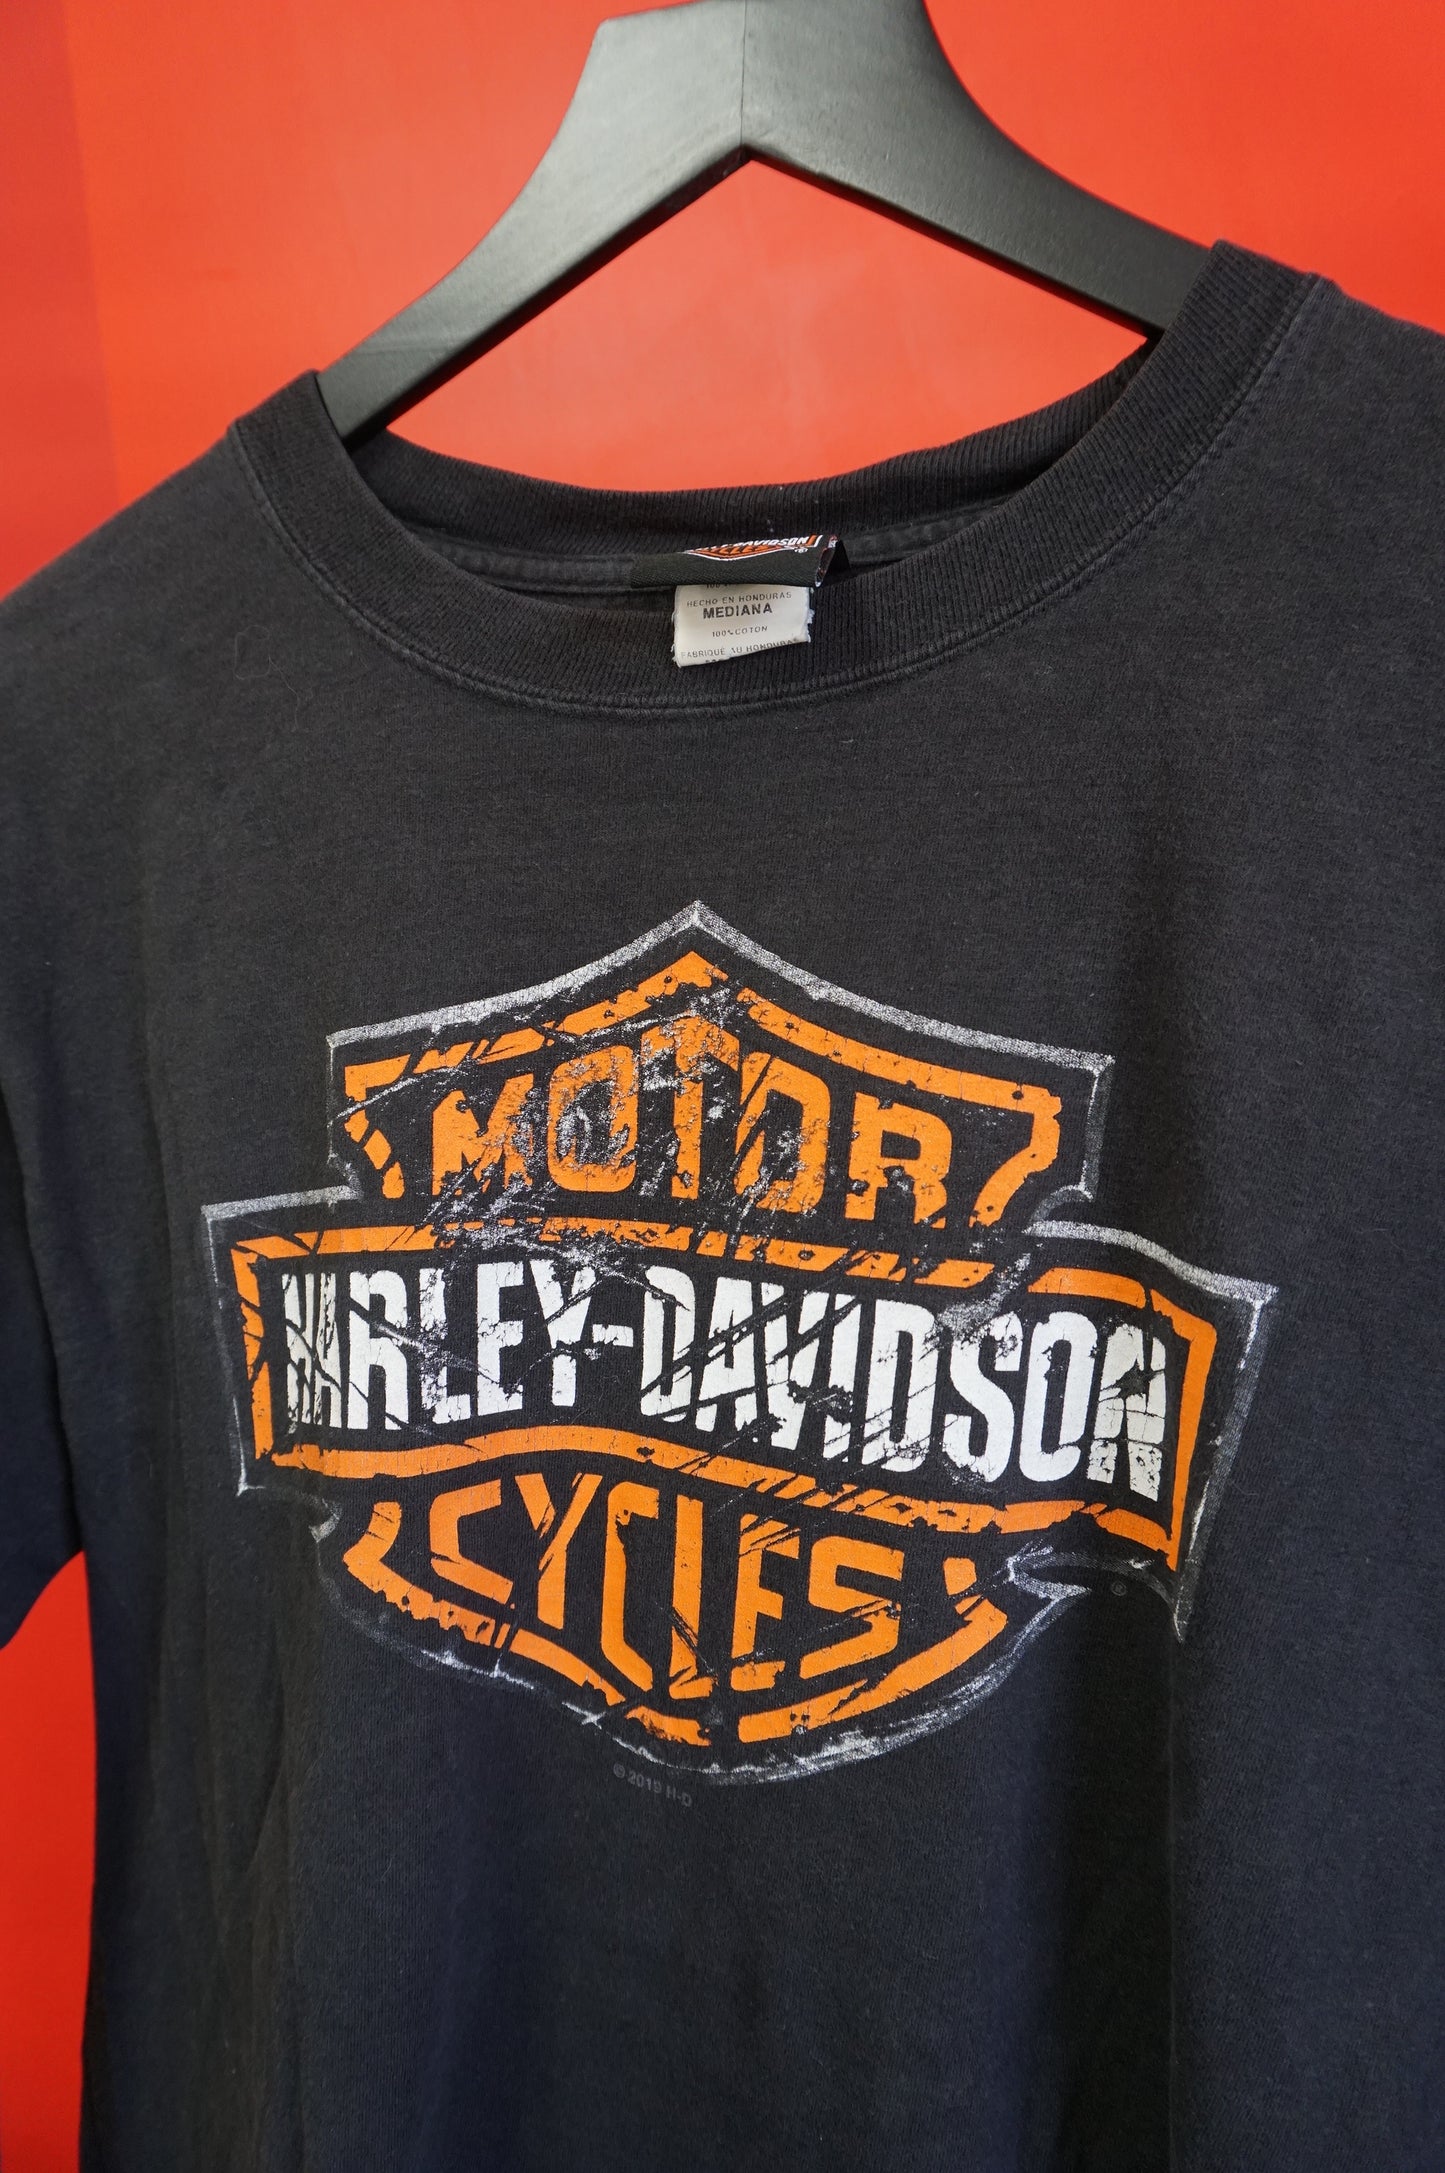 (S) Myrtle Beach Harley Davidson LS T-Shirt